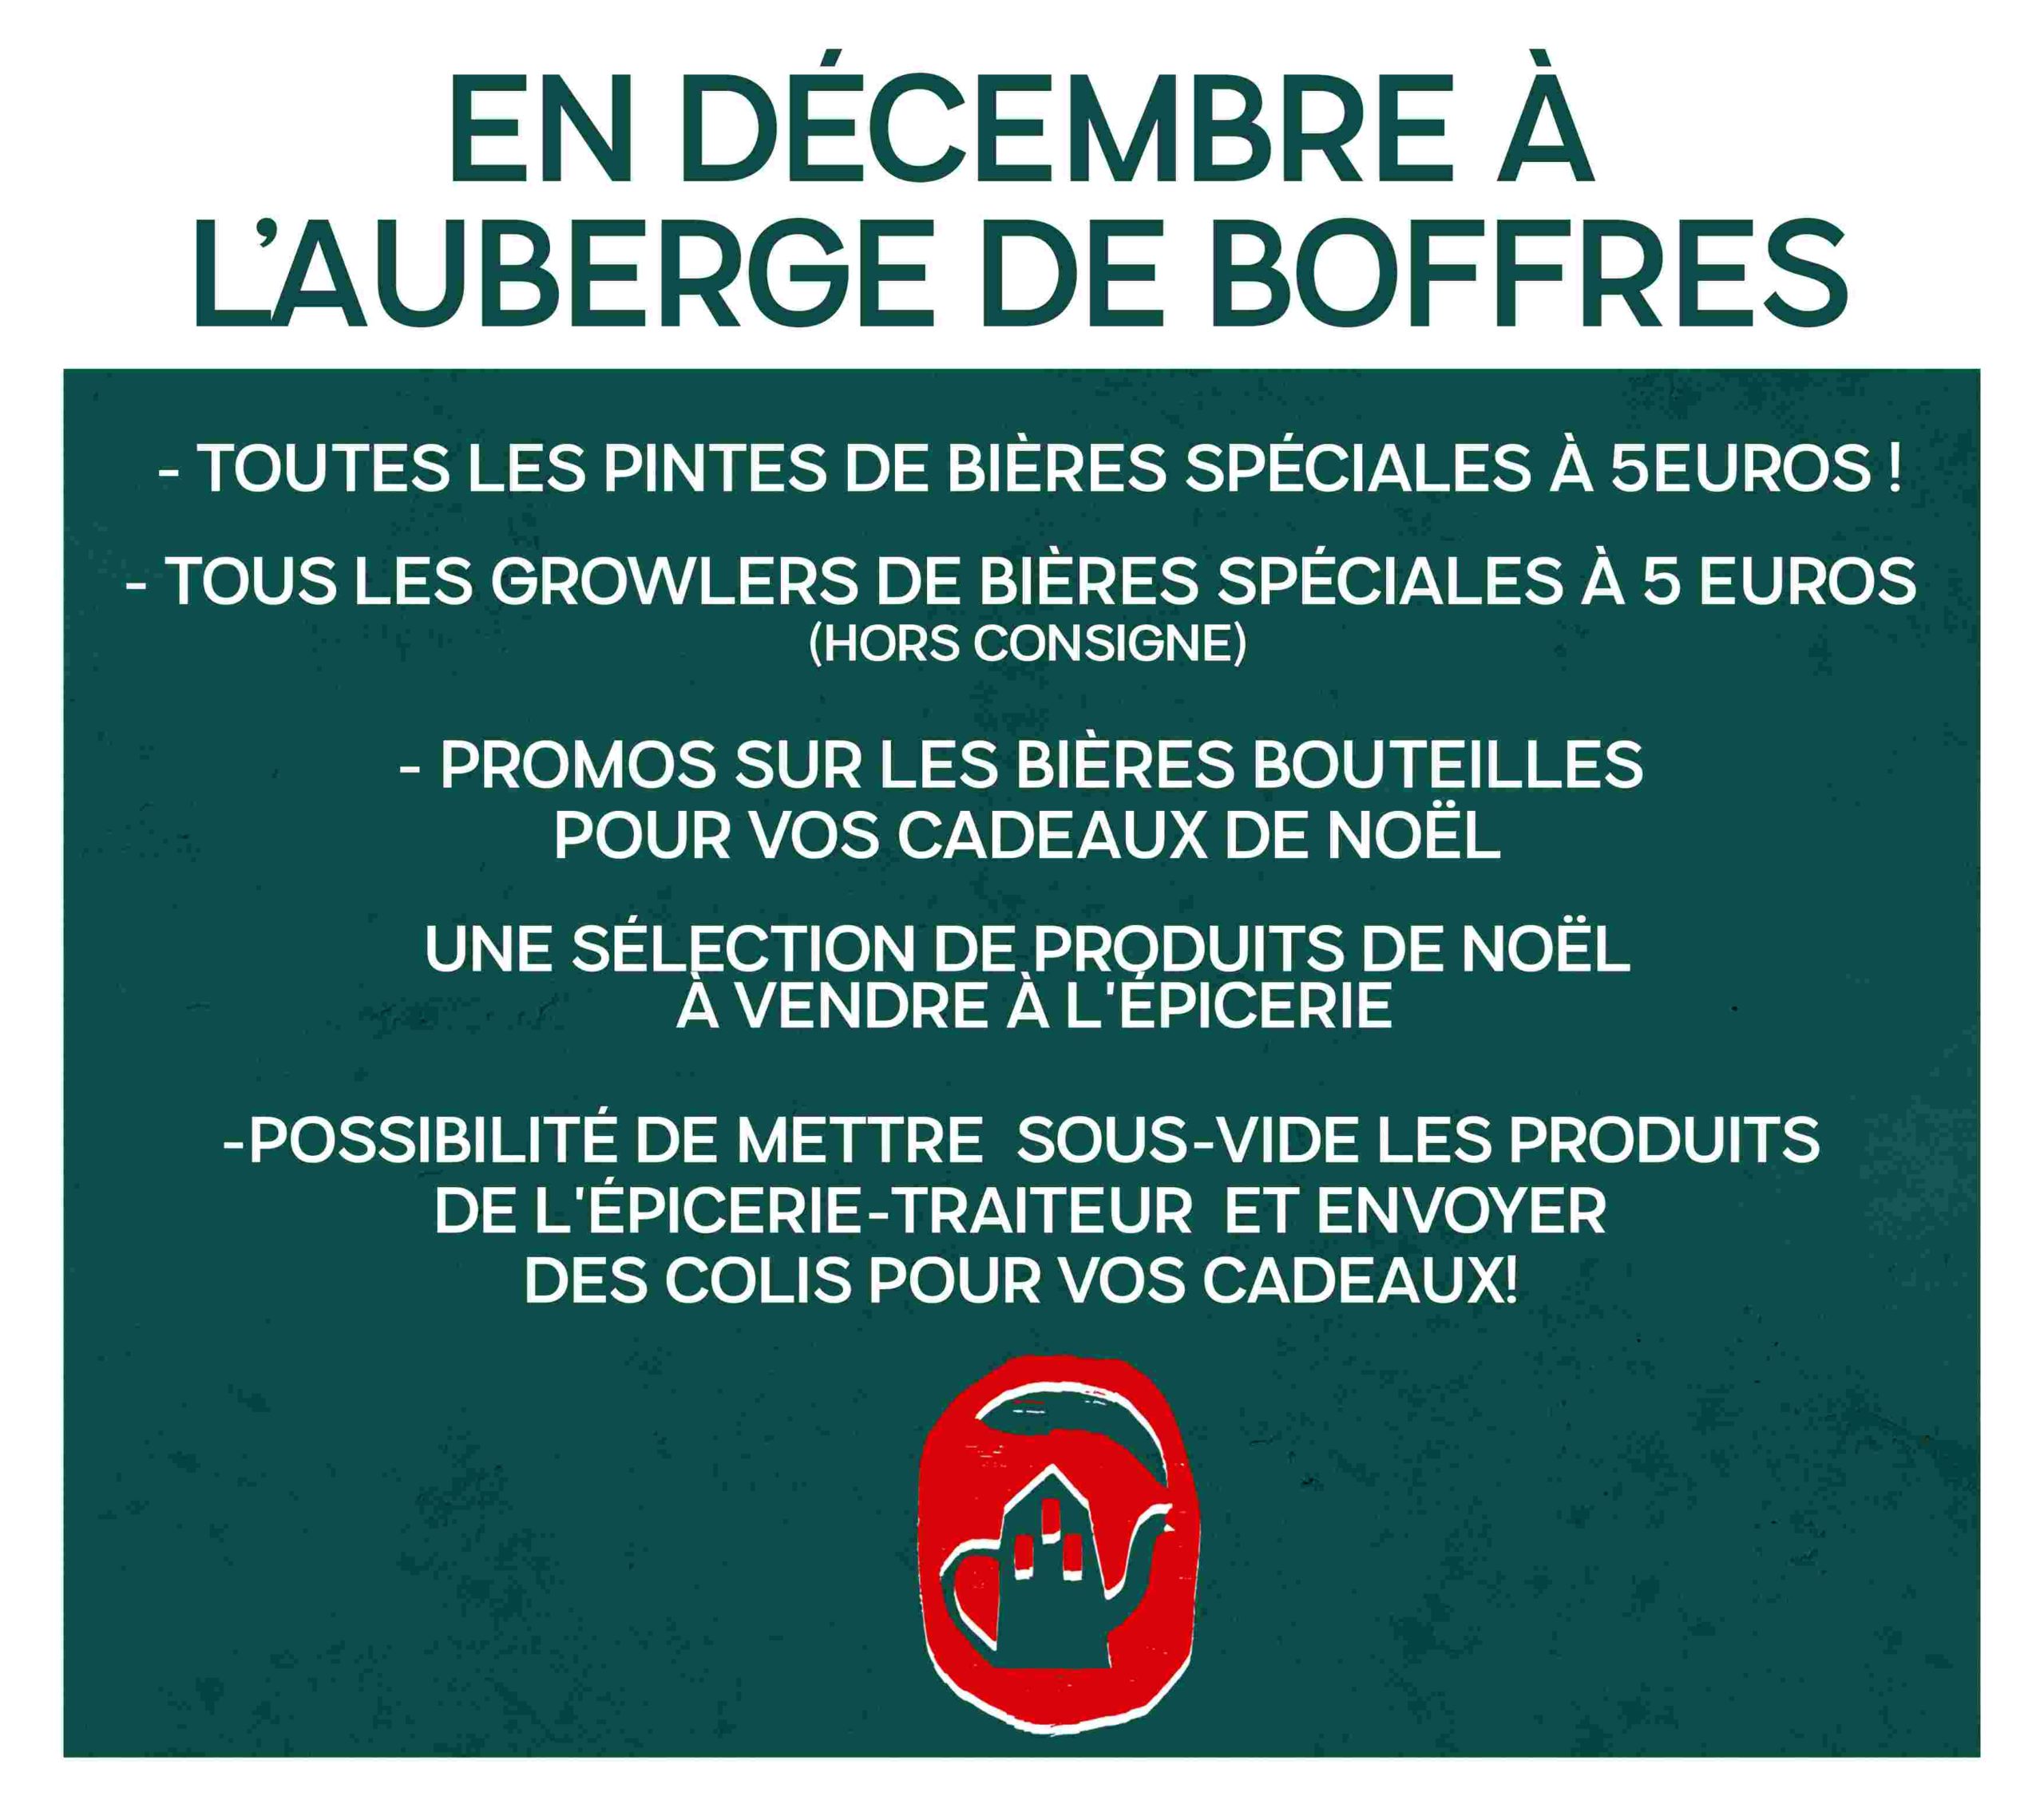 L'Auberge de Boffres propose une sélection de produits à vendre pour Noël, ainsi que des bières spéciales.